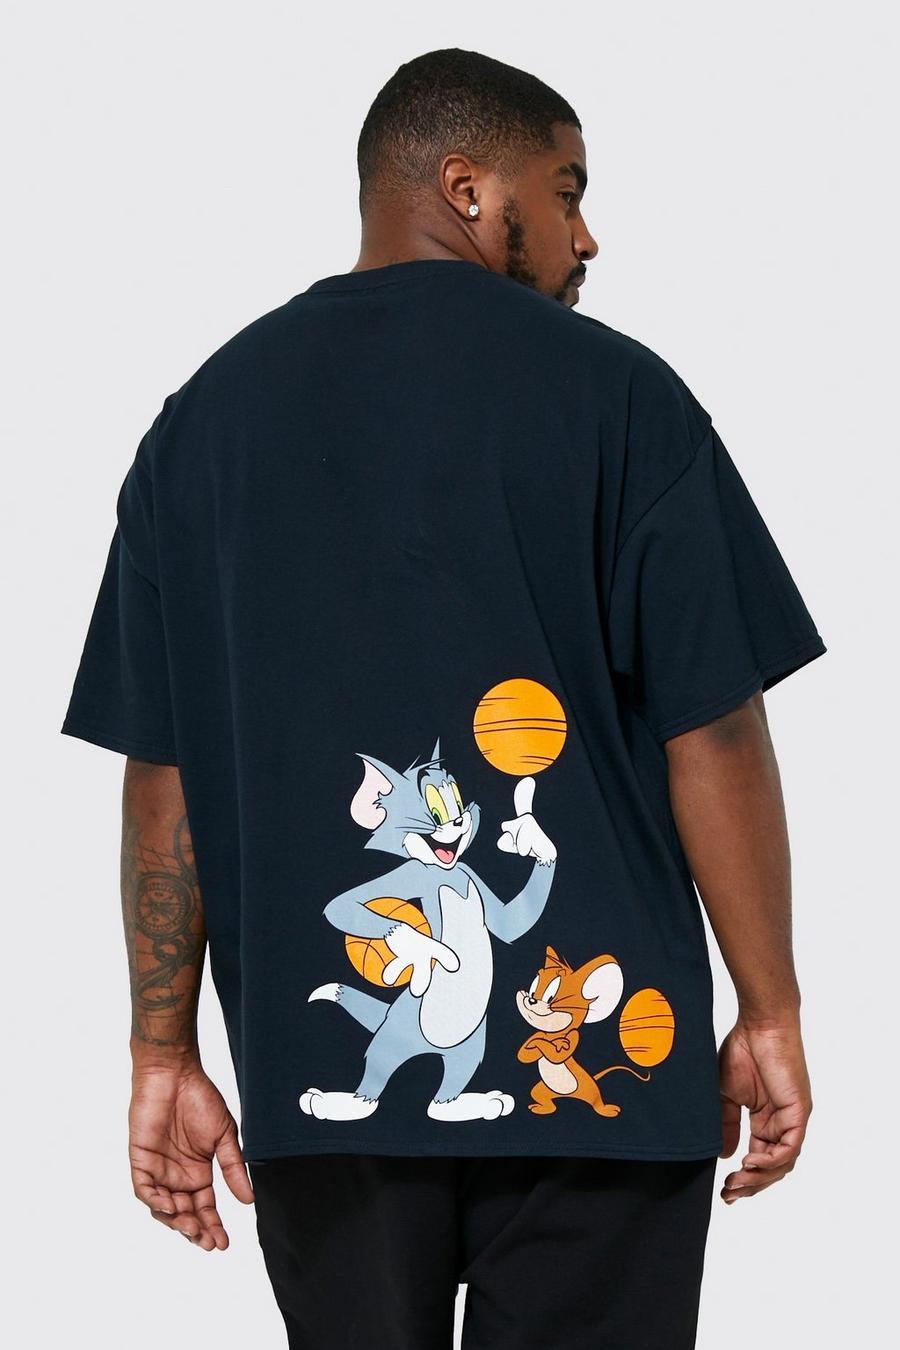 שחור טישרט עם הדפס ממותג של Tom & Jerry Basketball, מידות גדולות